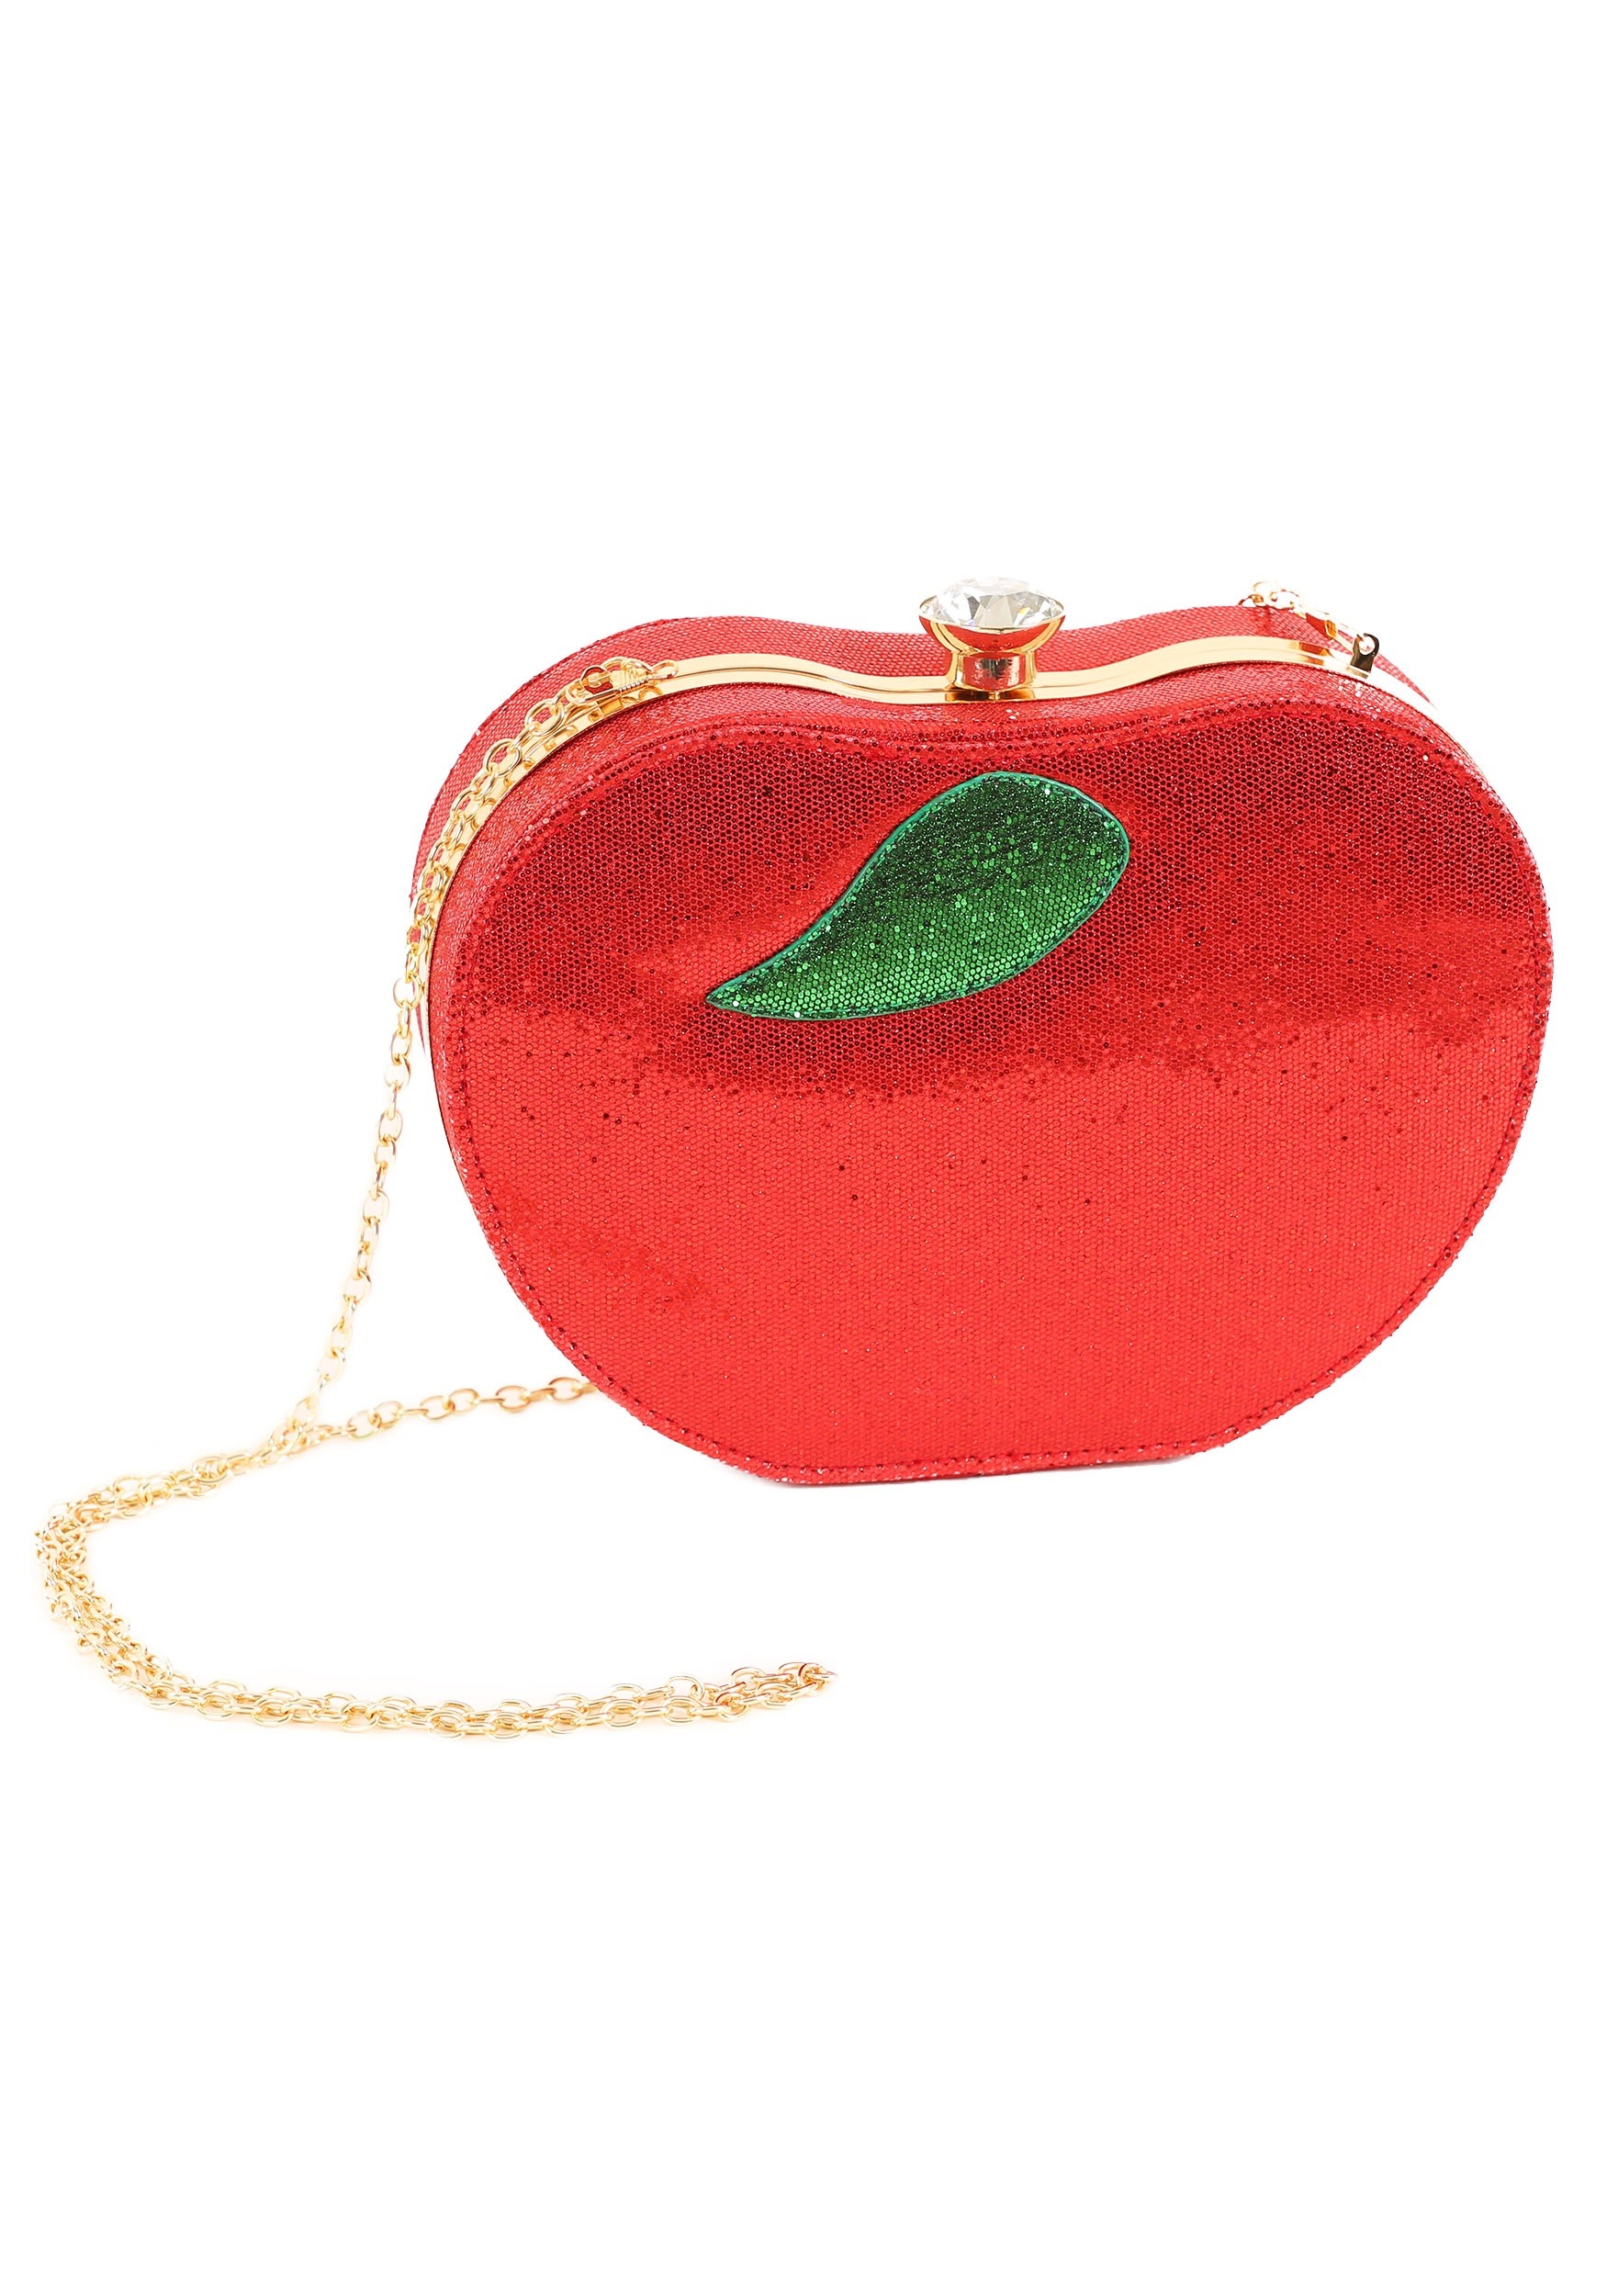 Snow White Apple Shoulder Bag | Bolsa diferentes, Bolsas, Acessórios